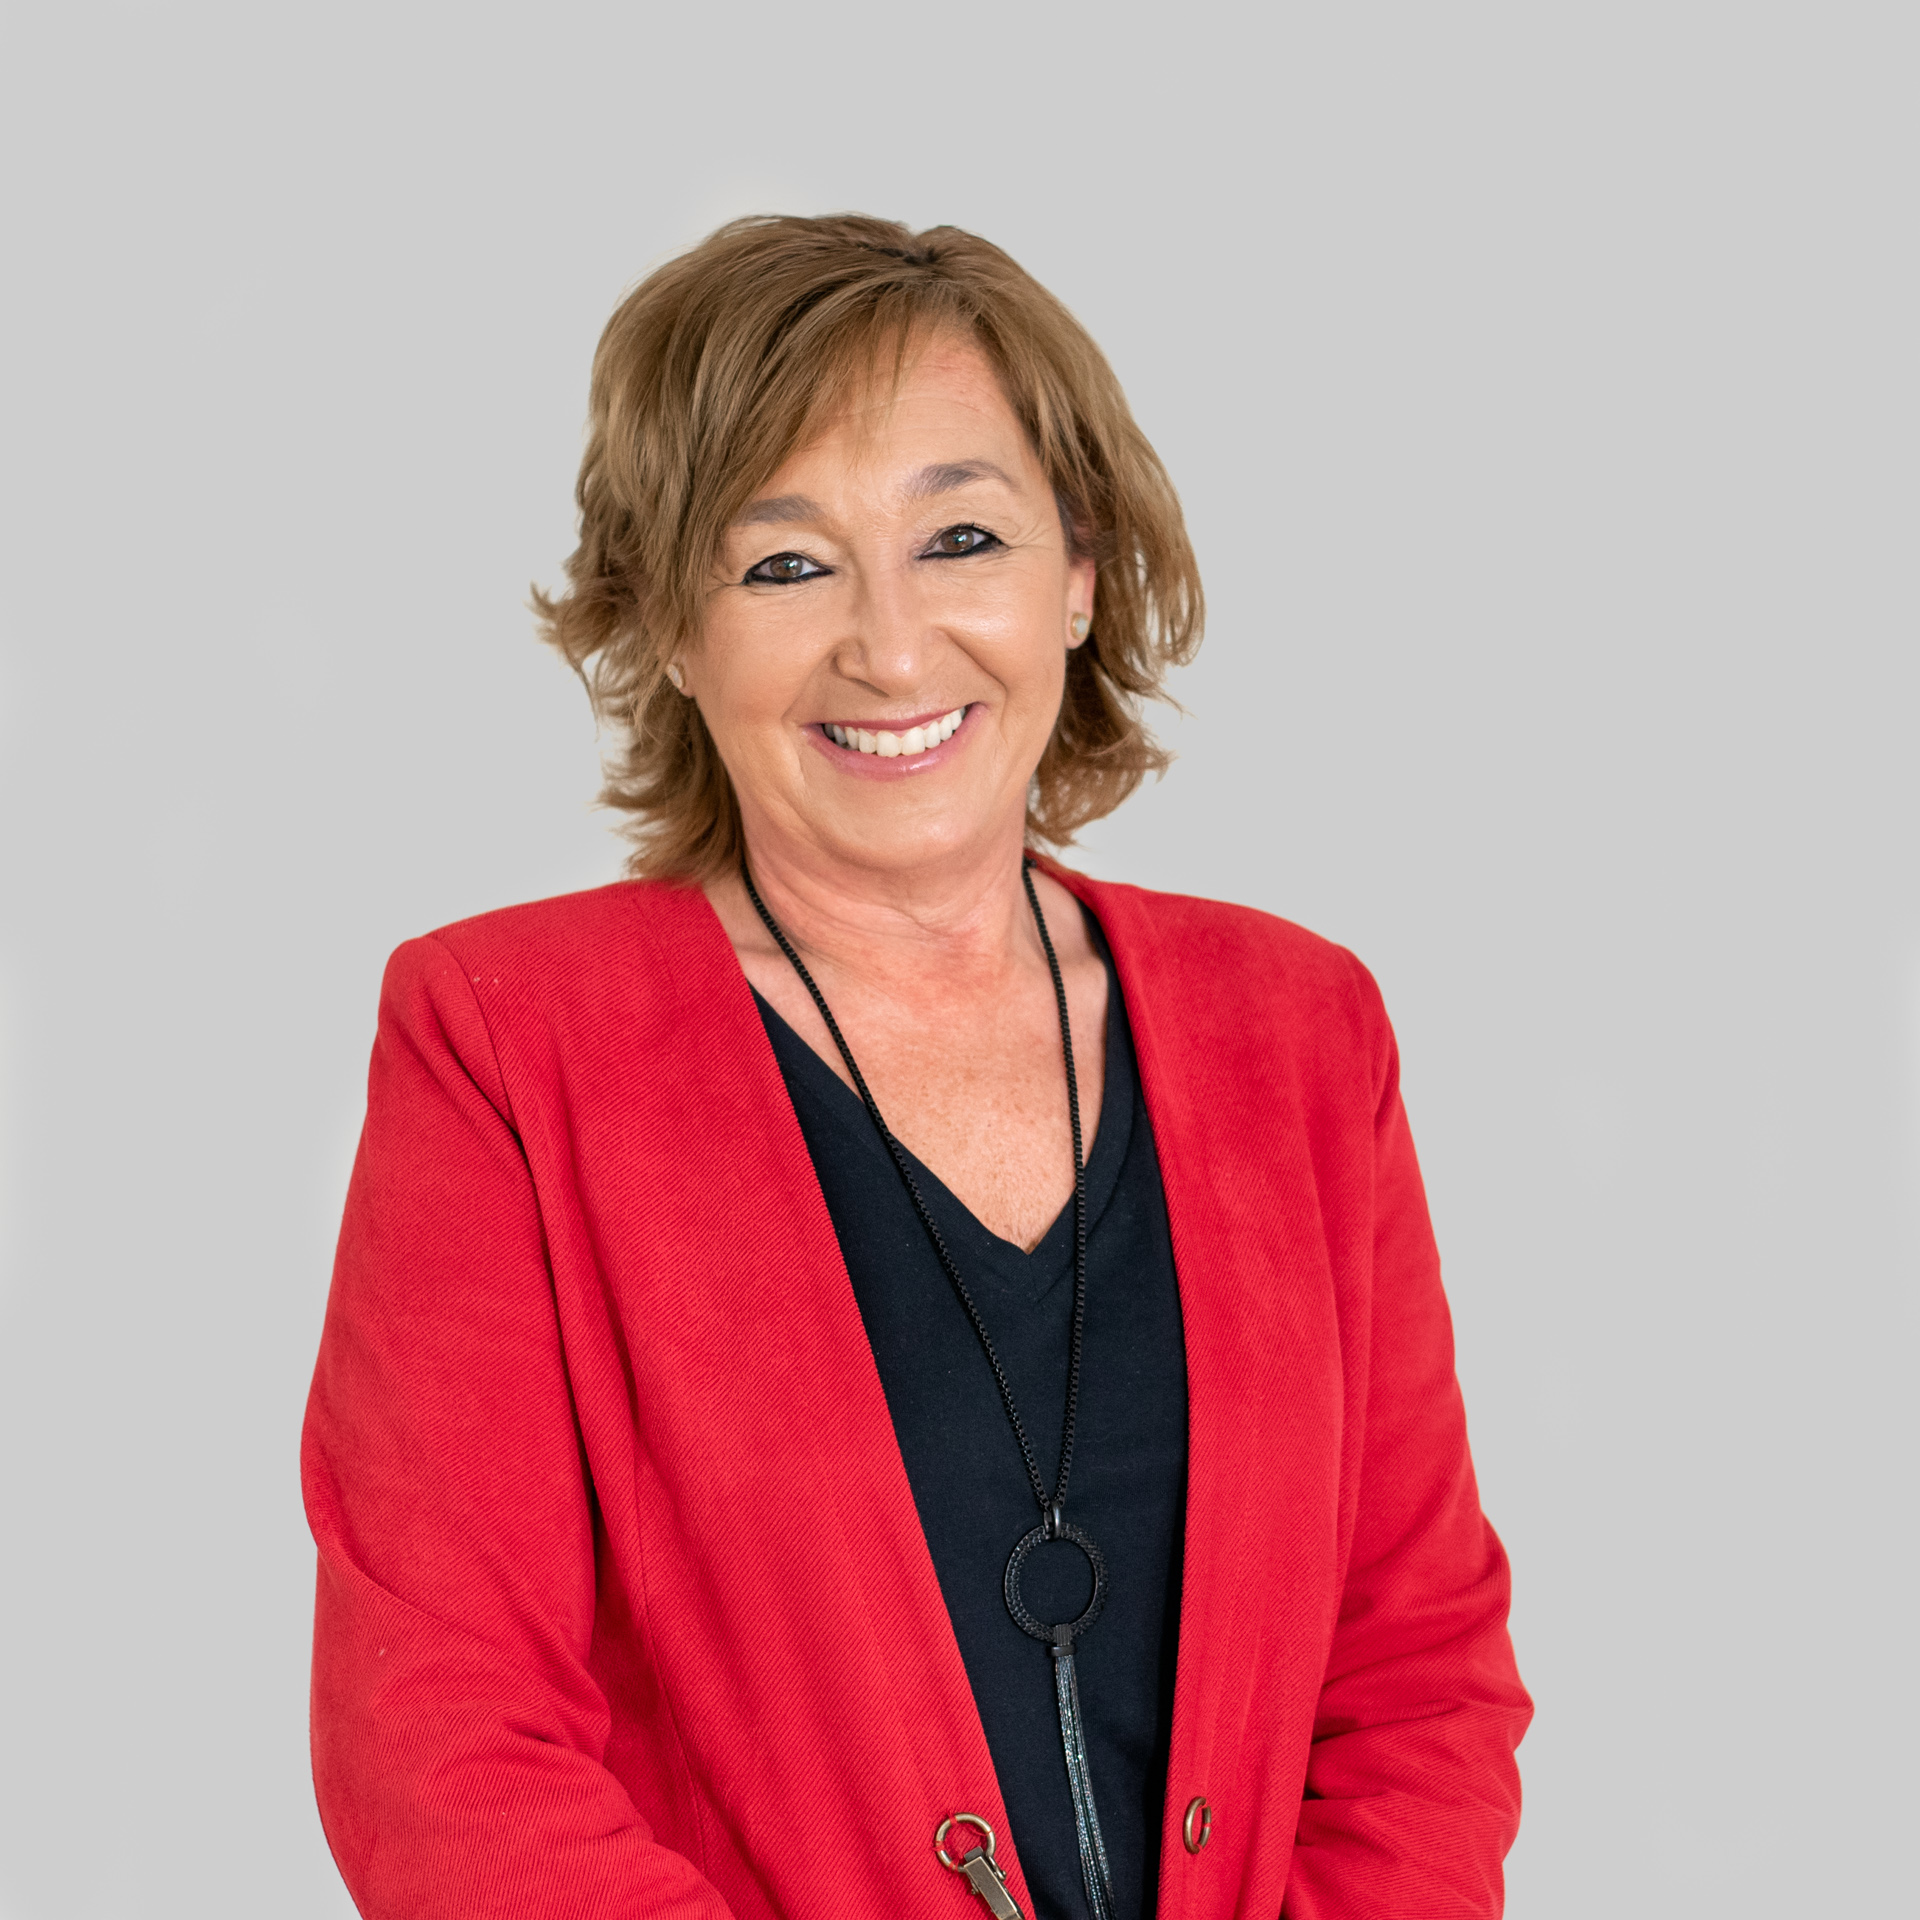 Nuria Parramona – Assessora Comercial